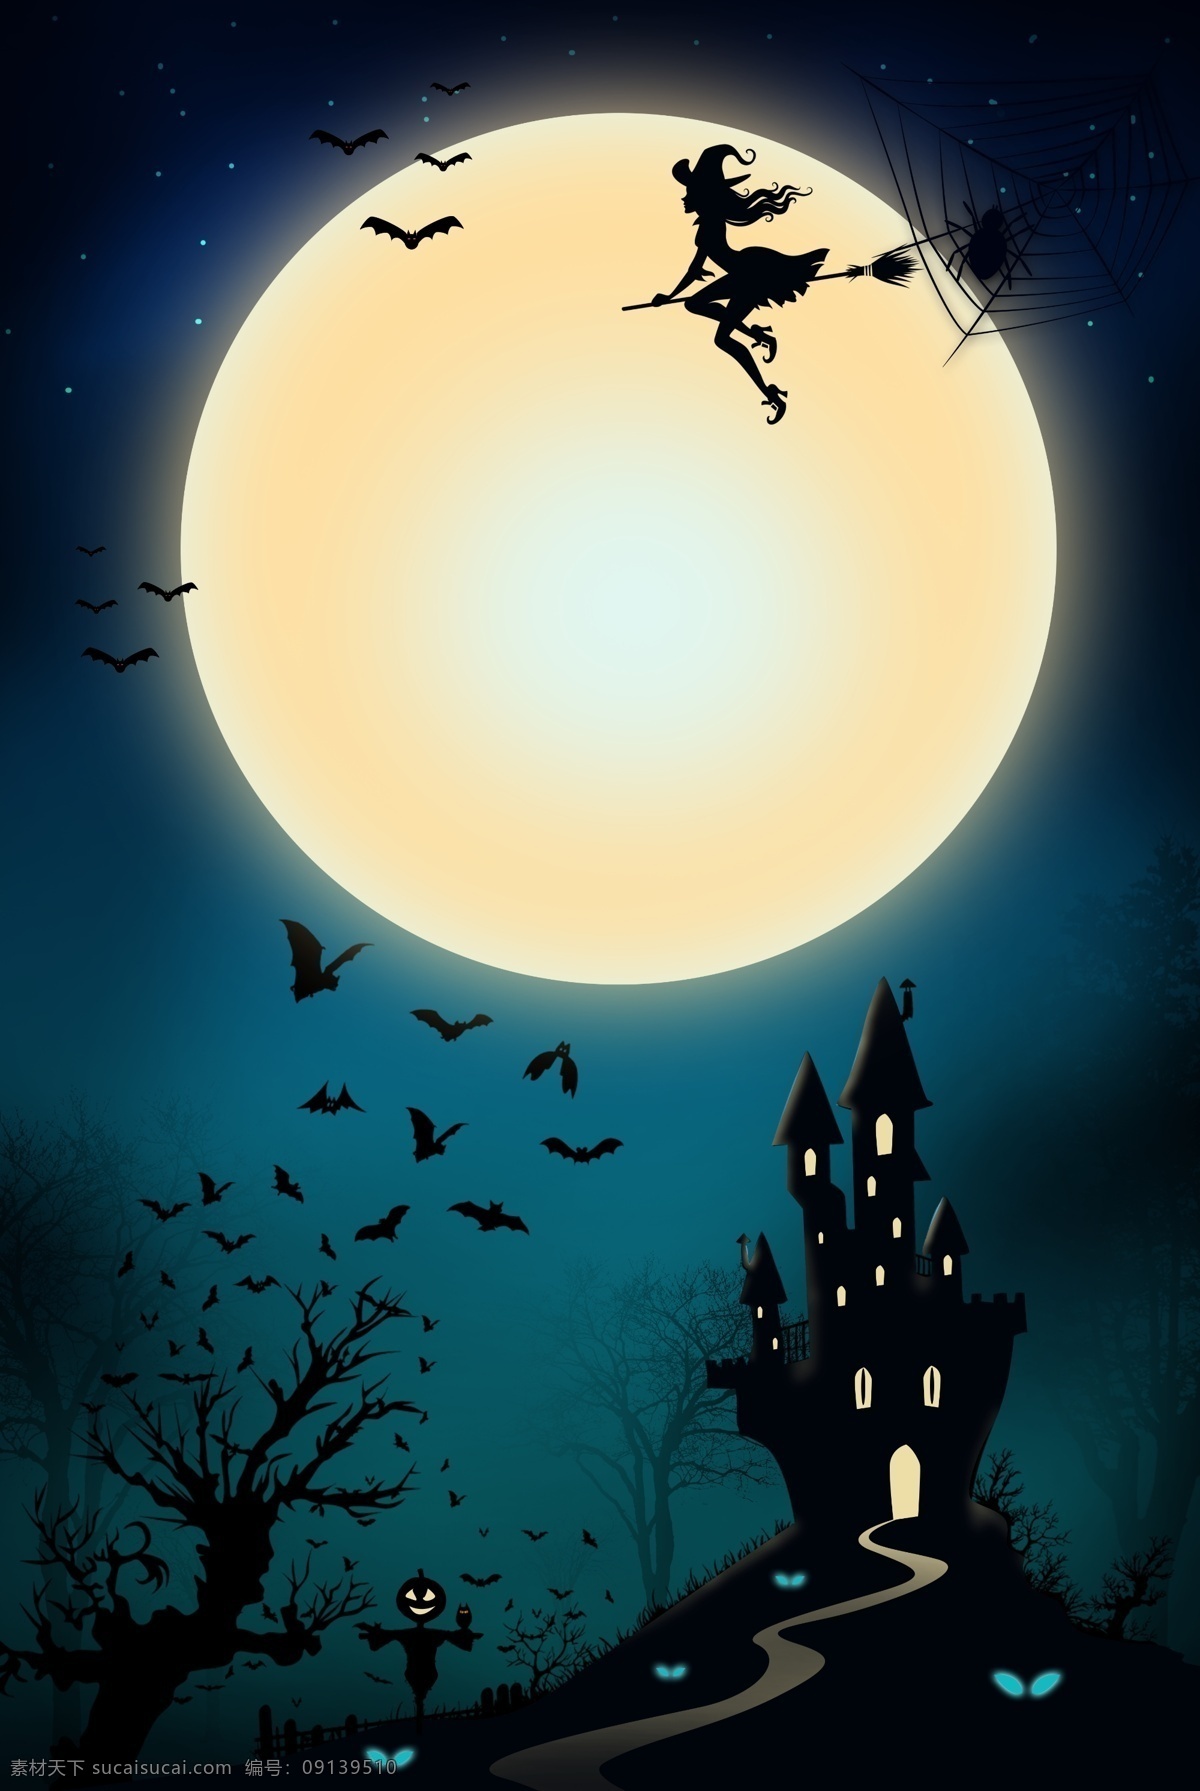 蓝色 手绘 黑夜 万圣节 背景 恐怖 城堡 月亮 插画背景 蝙蝠 万圣节背景 节日背景